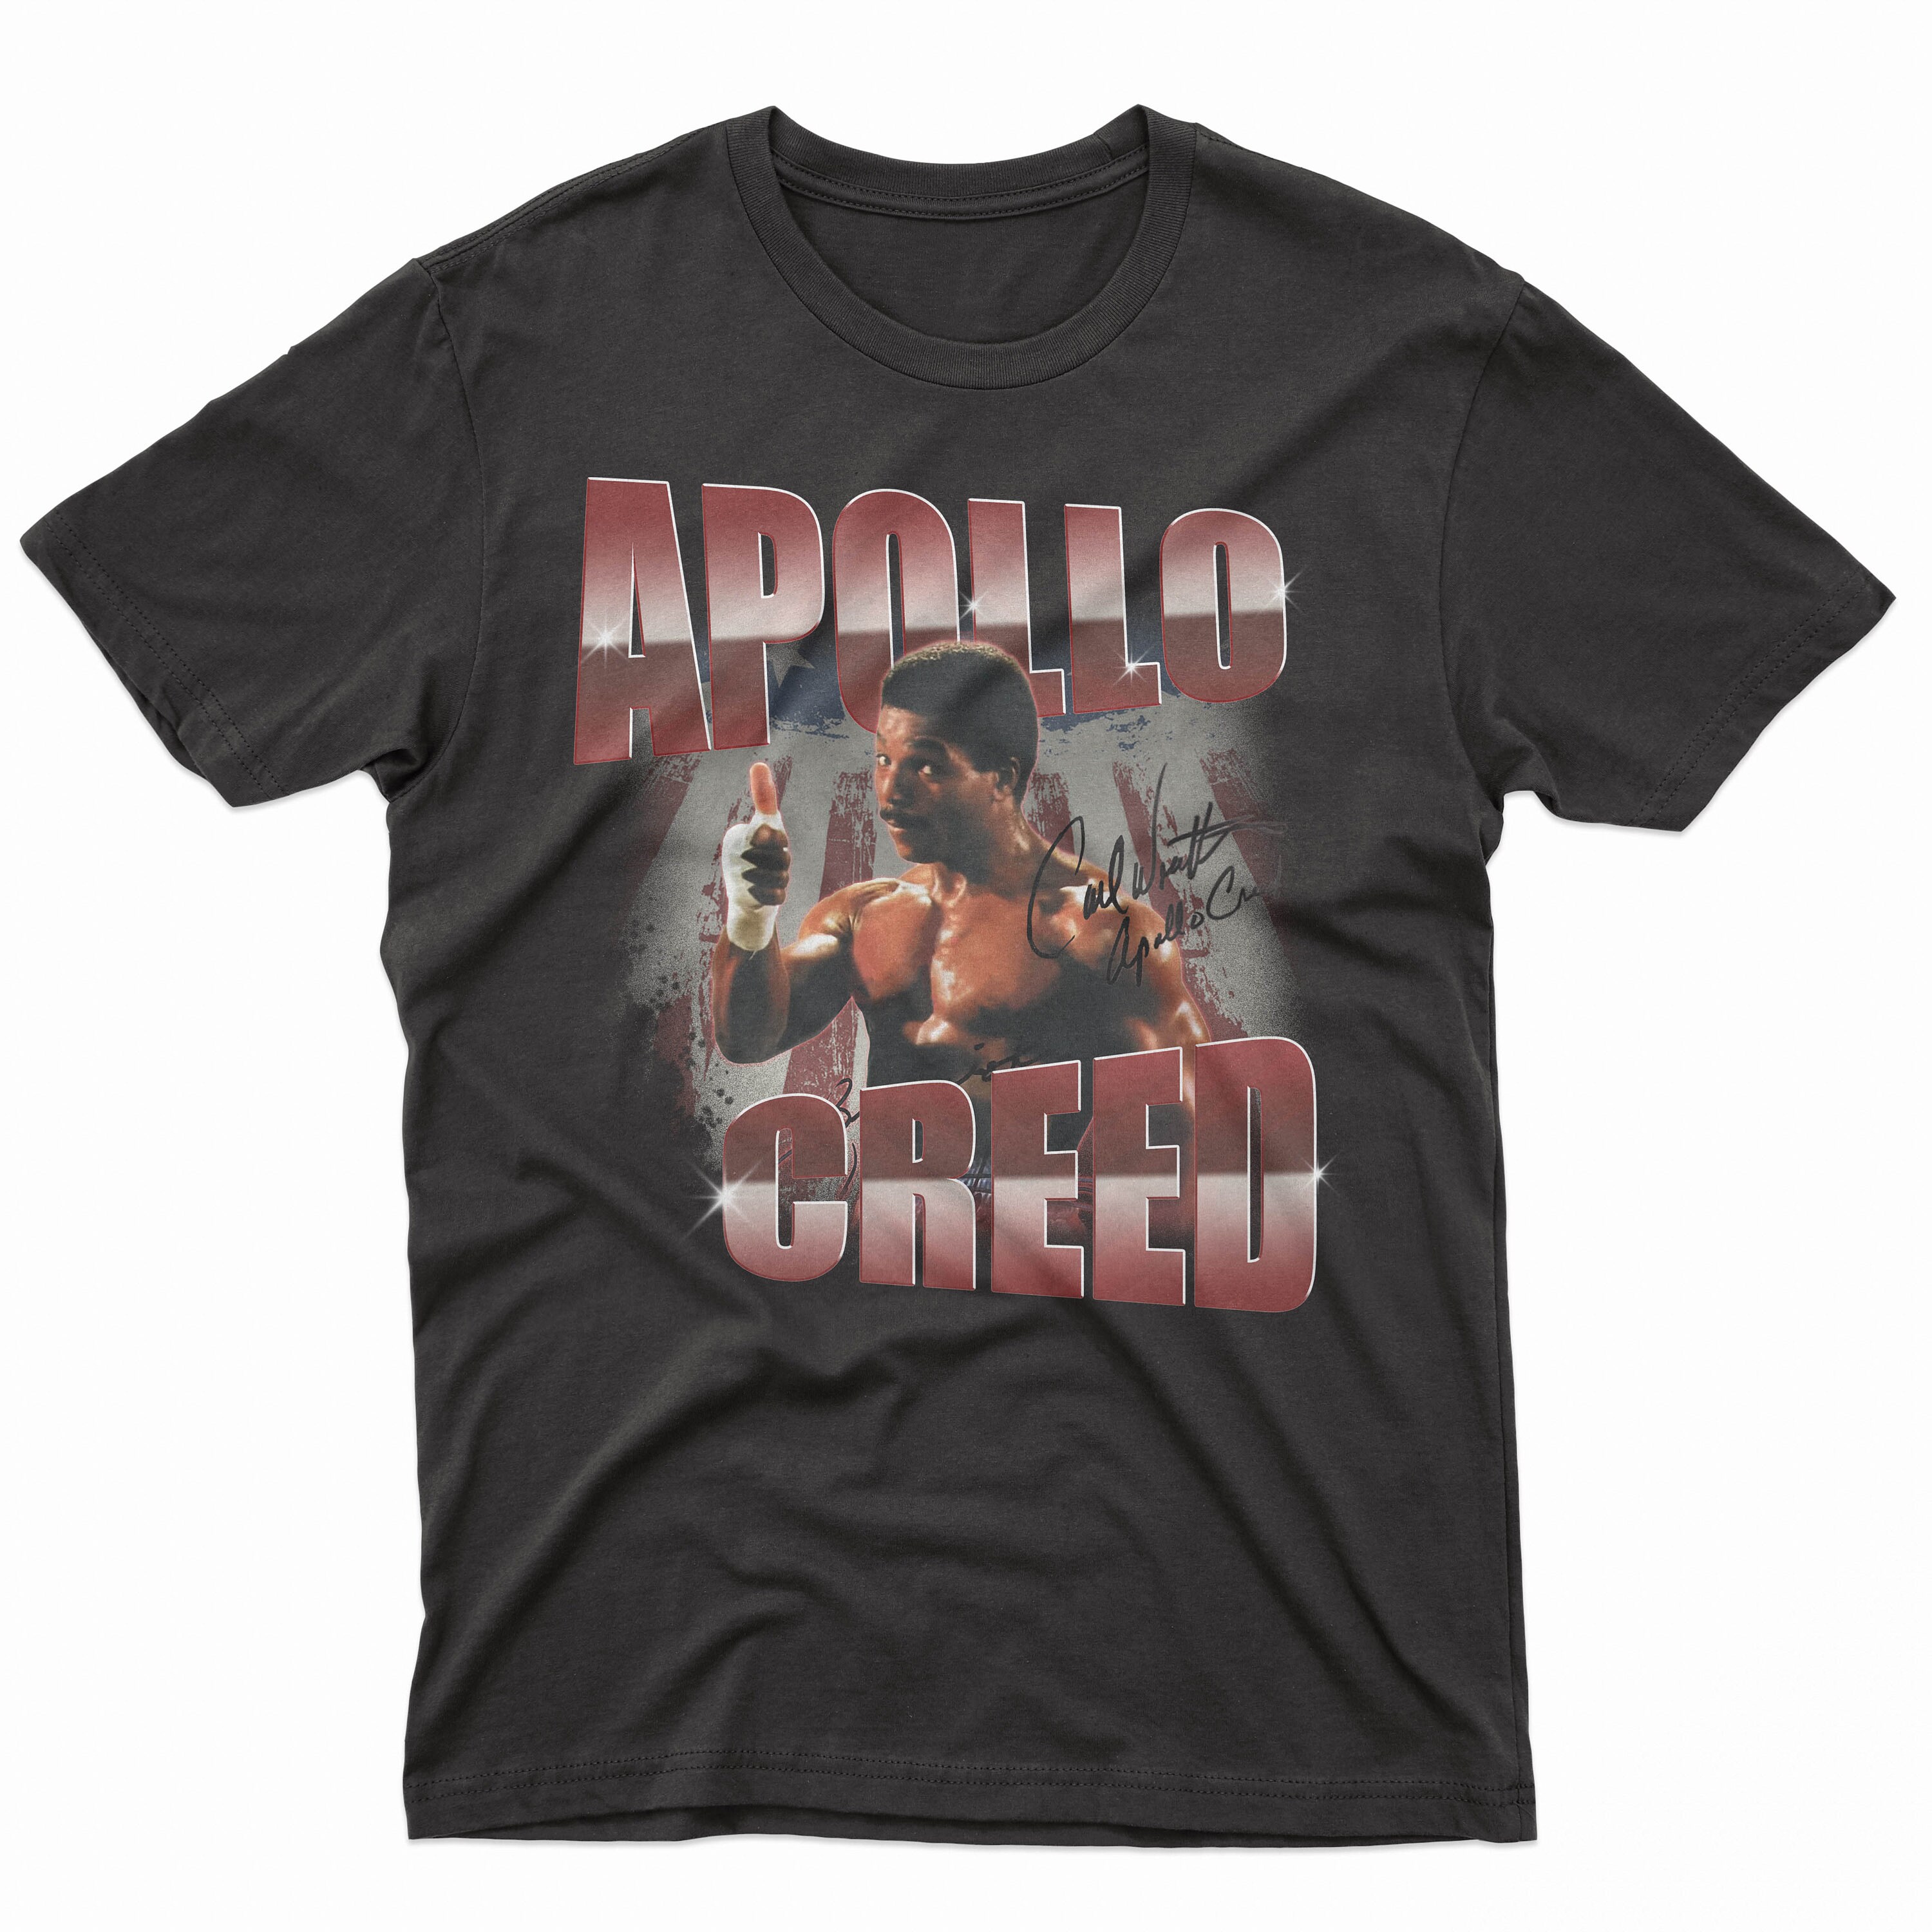 RIP Apollo Creed Carl Weathers, Retro Apollo Creed Shirt, Vintage Apollo Creed T-shirt